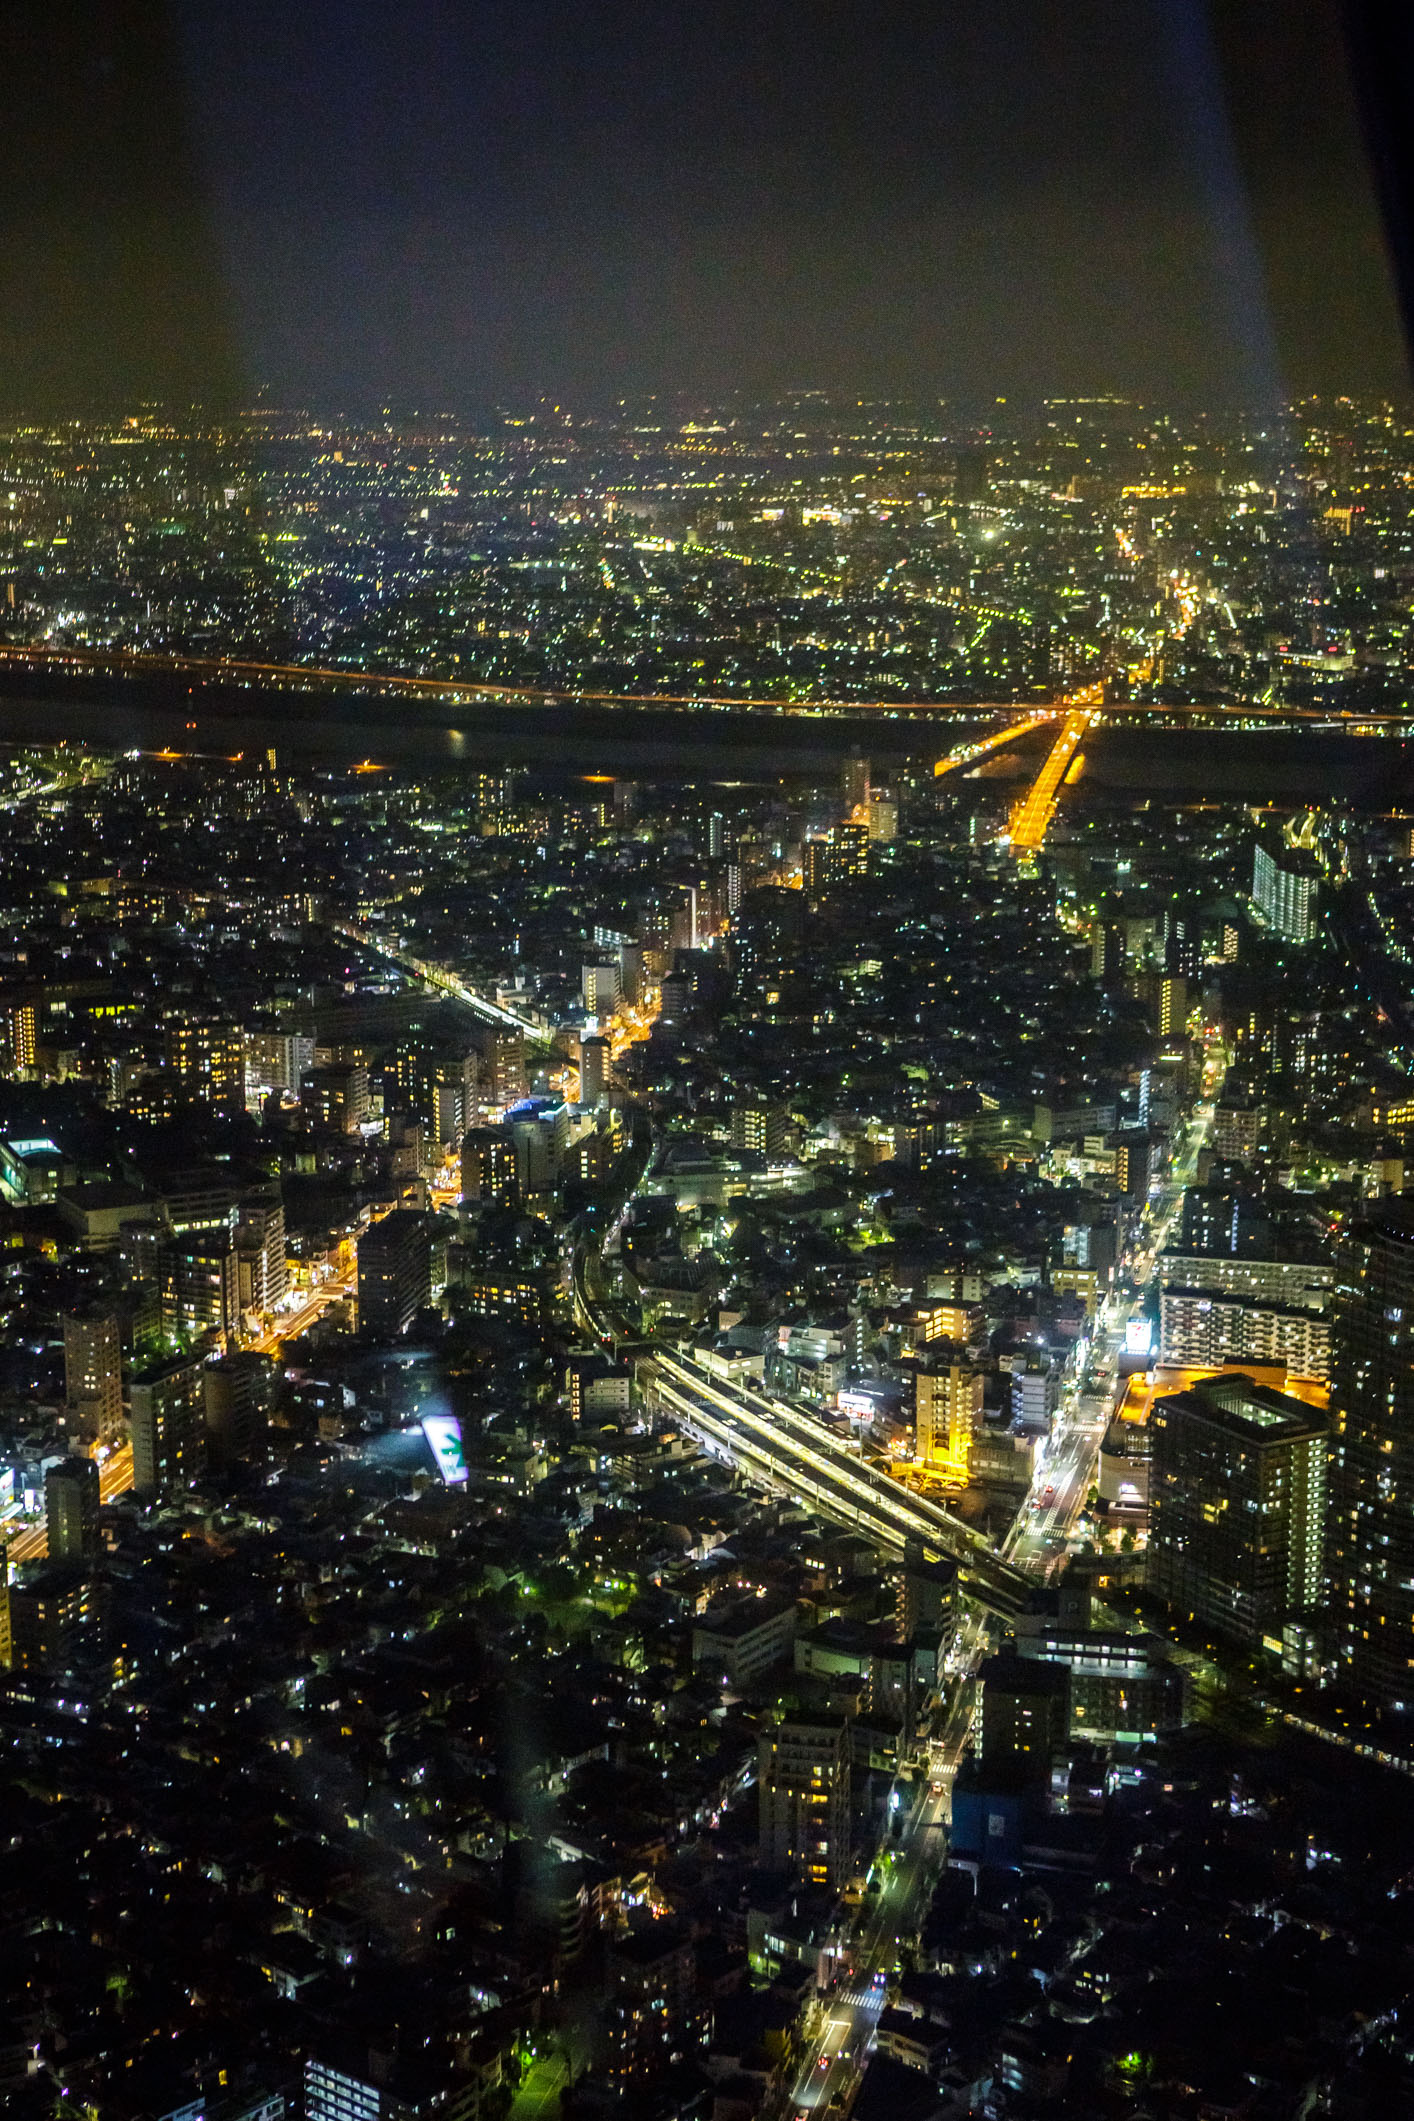 /Guewen/galeries/public/Voyages/Japon/Tokyo/Skytree-Tower/350/Skytree_14.jpg